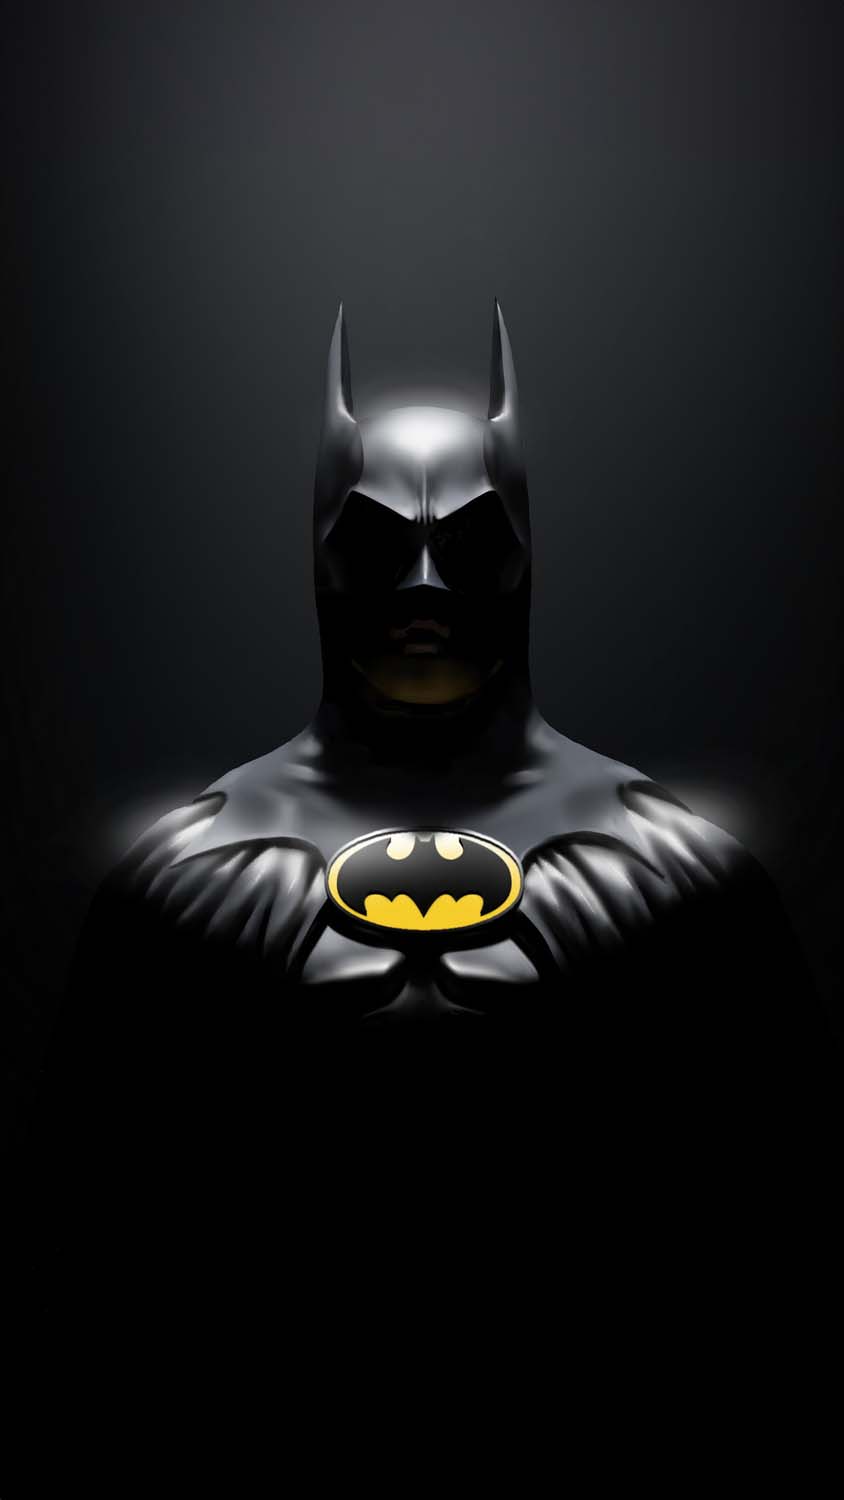 Batman 89 iPhone Wallpaper HD